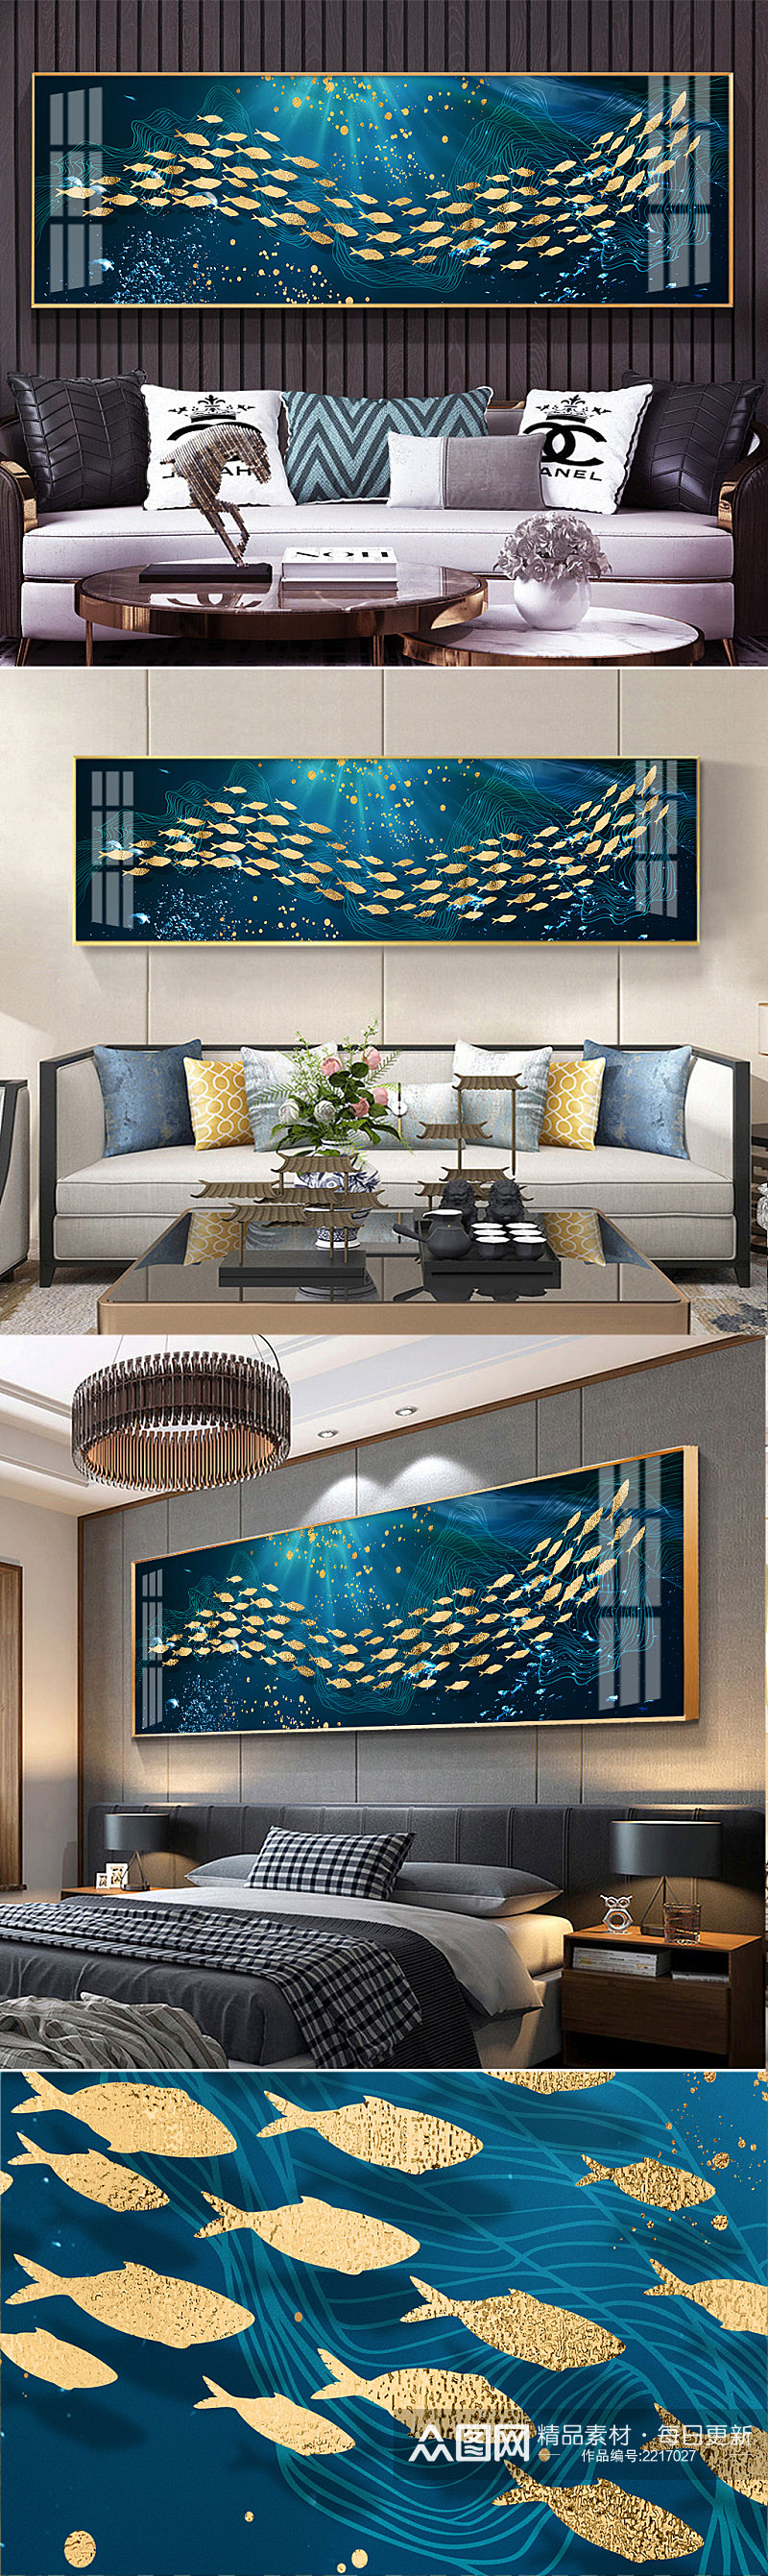 海底世界金鱼装饰画素材